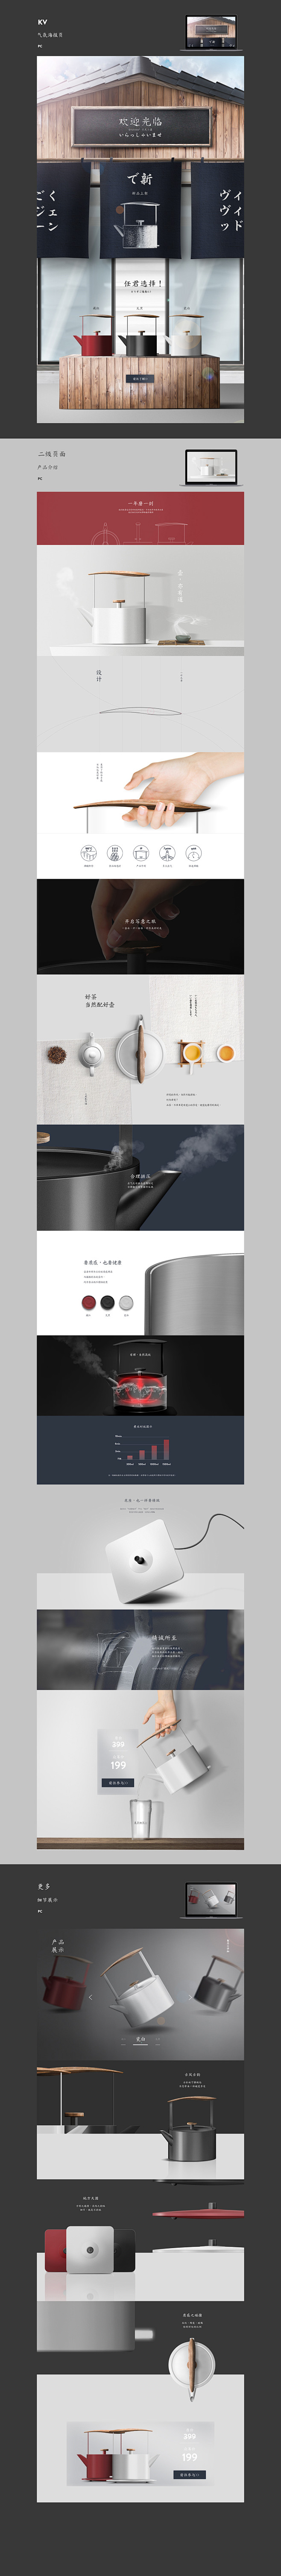 和风水壶产品设计-宣传页面-2